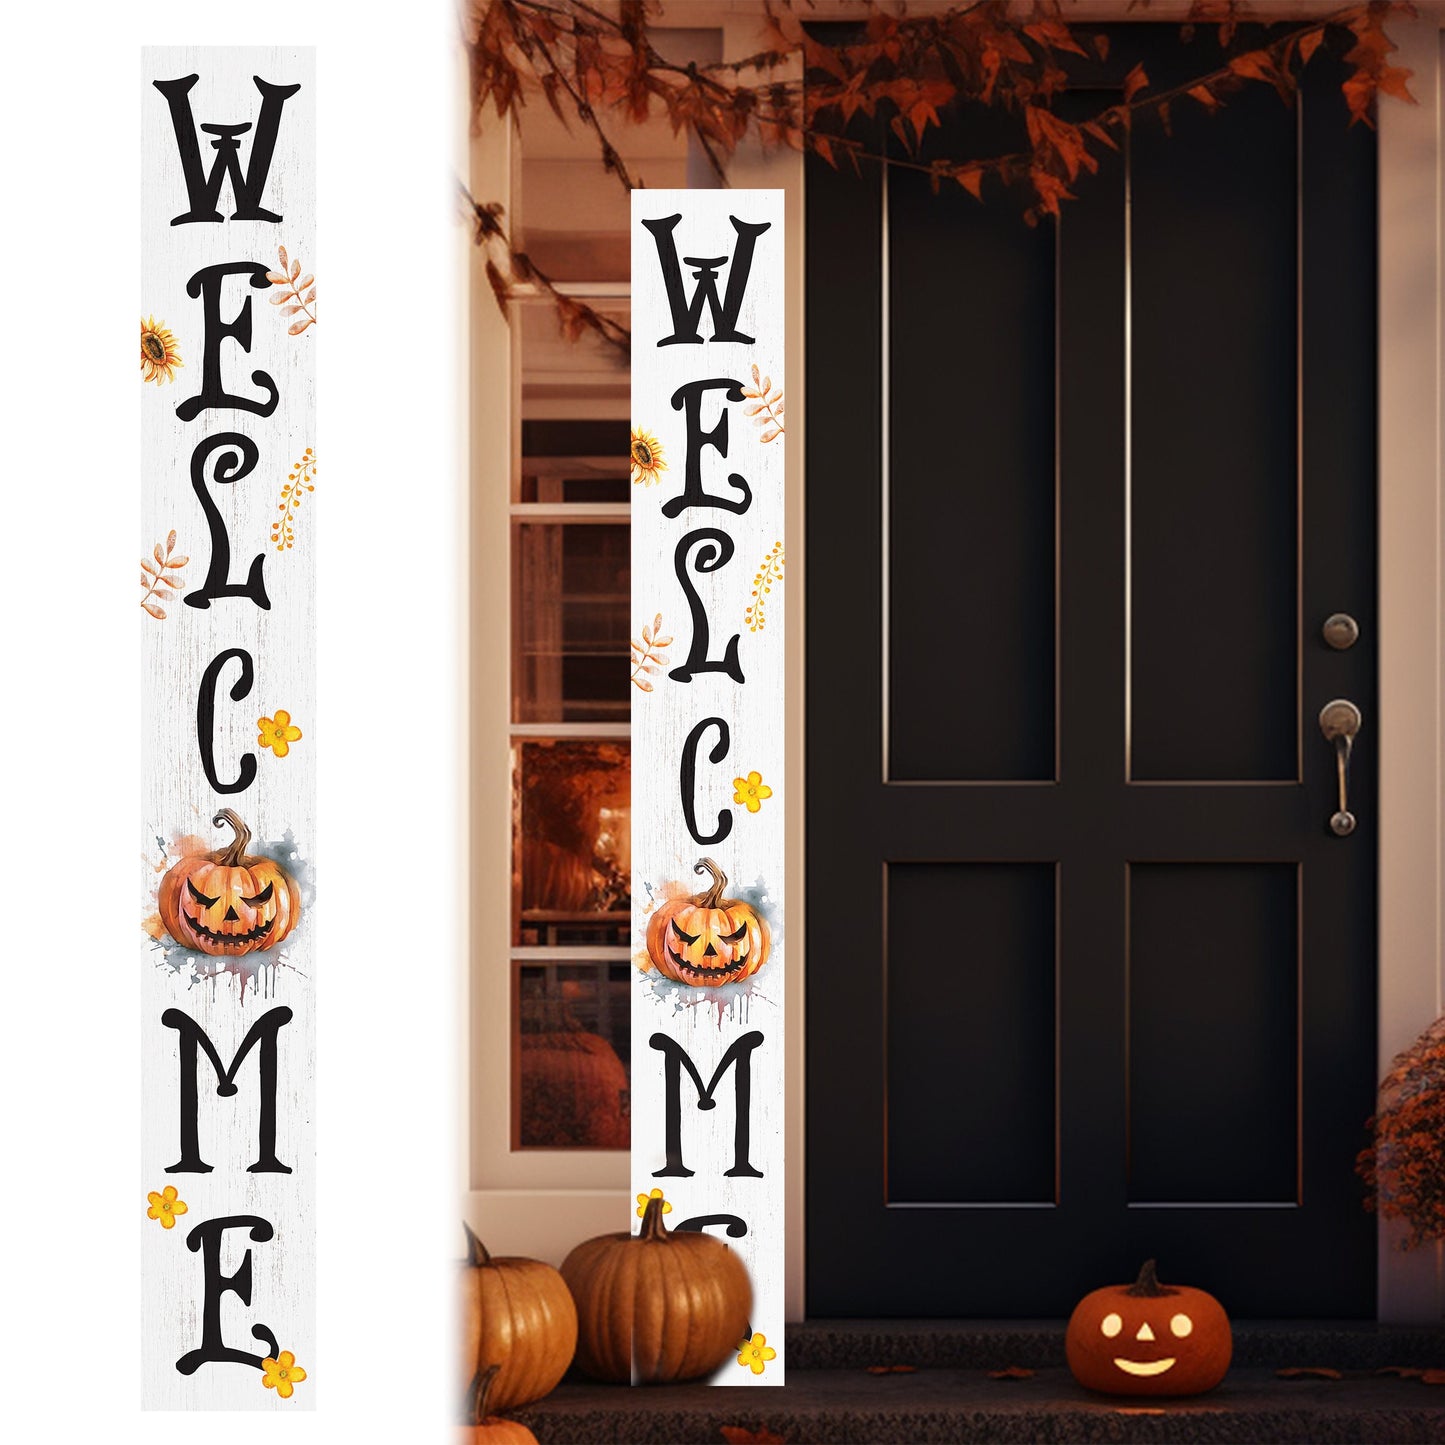 72in Jack-o-Lantern Halloween Porch Sign - Front Porch Halloween Welcome Sign with Halloween Decoration, Farmhouse Entryway Porch Decor